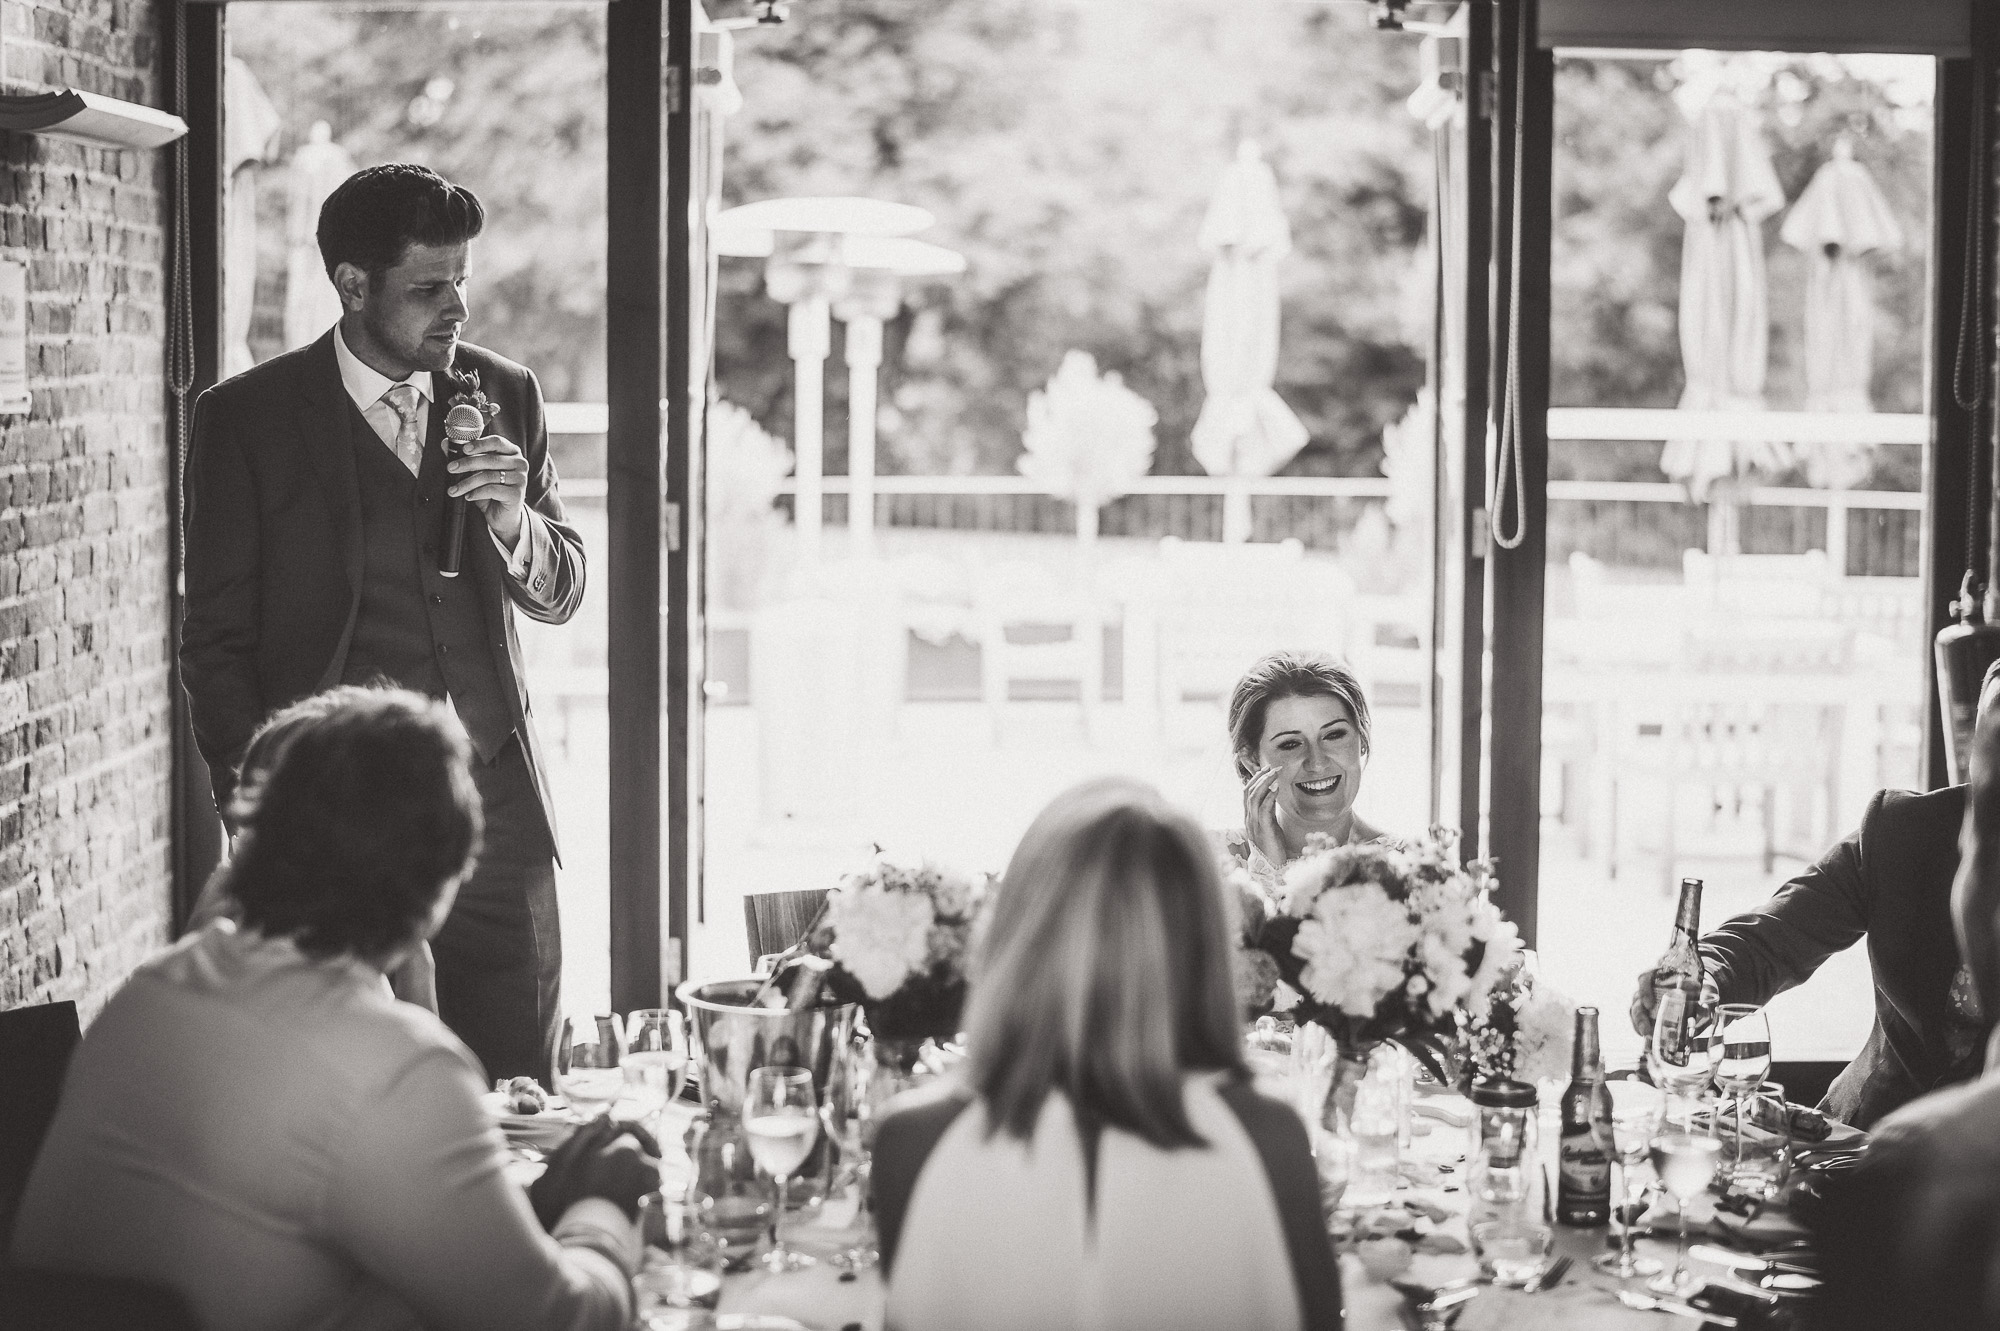 A wedding photographer captures a groom giving a speech.